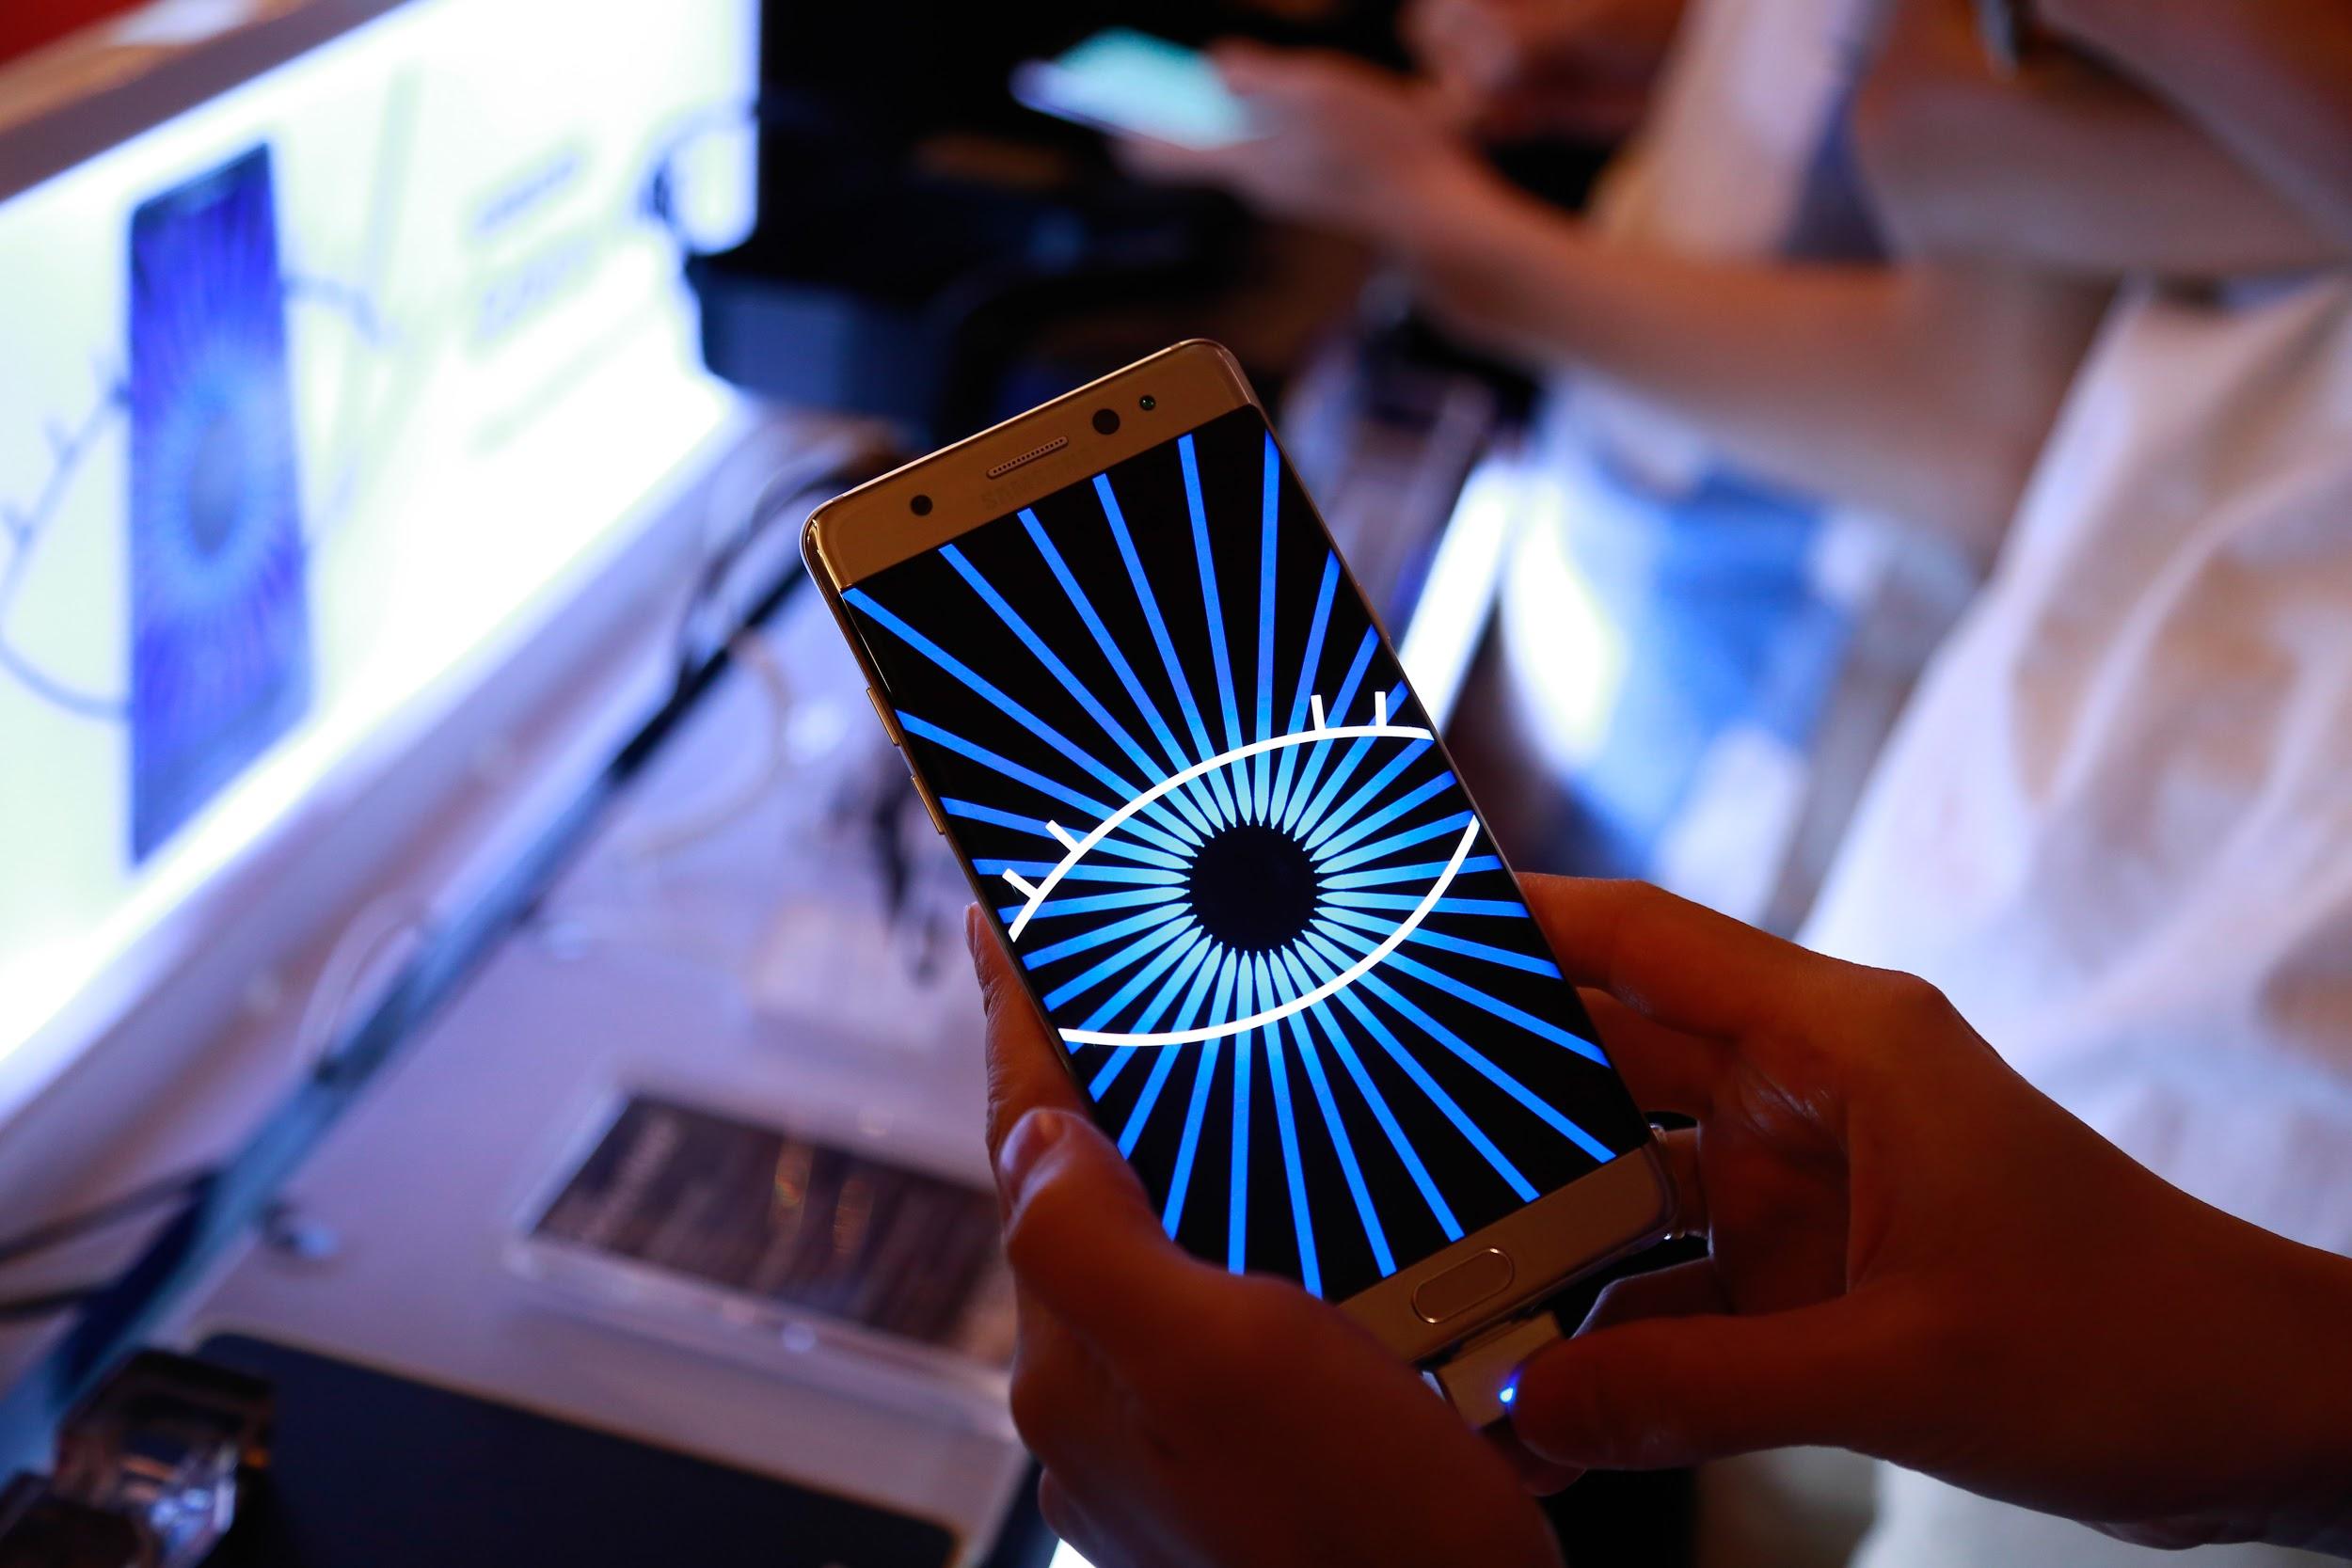 Là một trong những át chủ bài của Samsung trong năm 2016, hội tụ tất cả những tinh tuý công nghệ hàng đầu hiện nay, lại được chào sân bằng hàng loạt buổi ra mắt hoành tráng trải đều trên cả nước, Galaxy Note7 đã thu hút được sự chú ý và nhanh chóng trở thành sự lựa chọn hàng đầu của nhiều người dùng Việt.